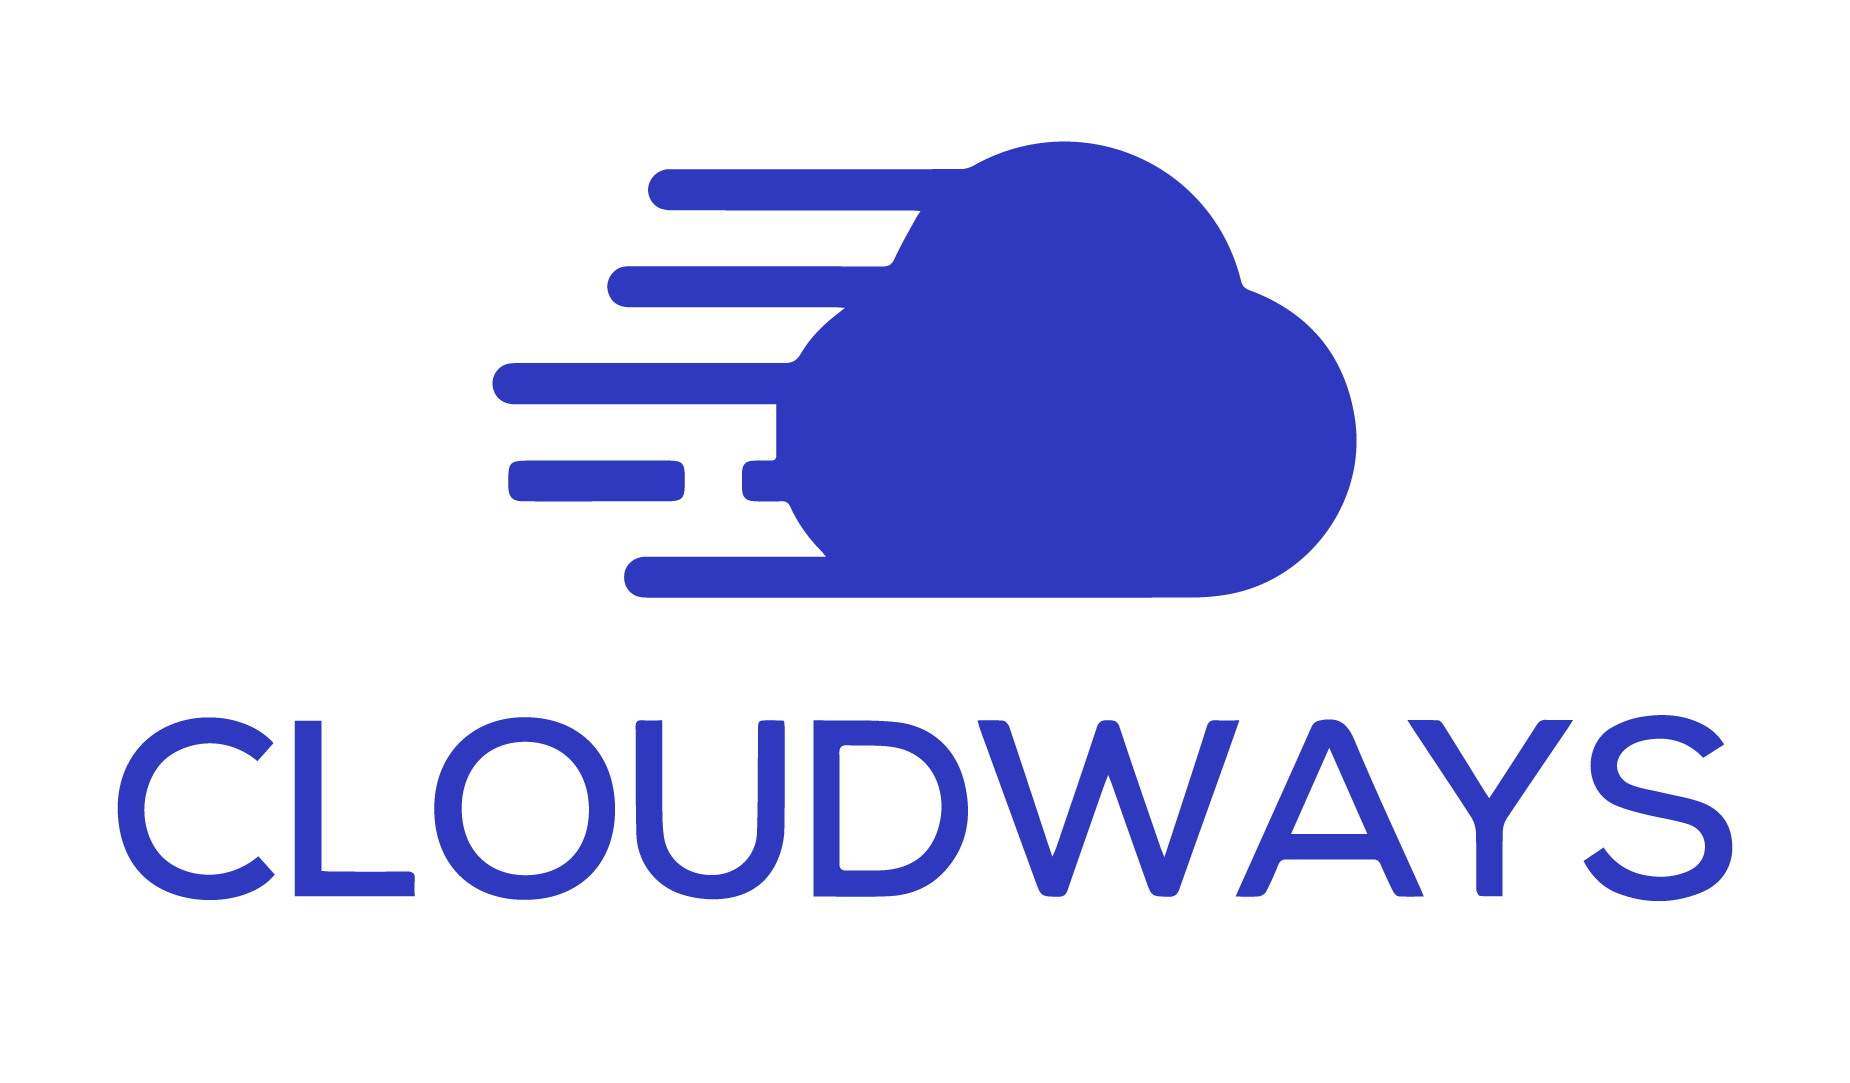 สมัครใช้ CloudWays ที่นี่รับฟรีคอร์สเรียนออนไลน์สอนใช้งานแบบครบเครื่อง